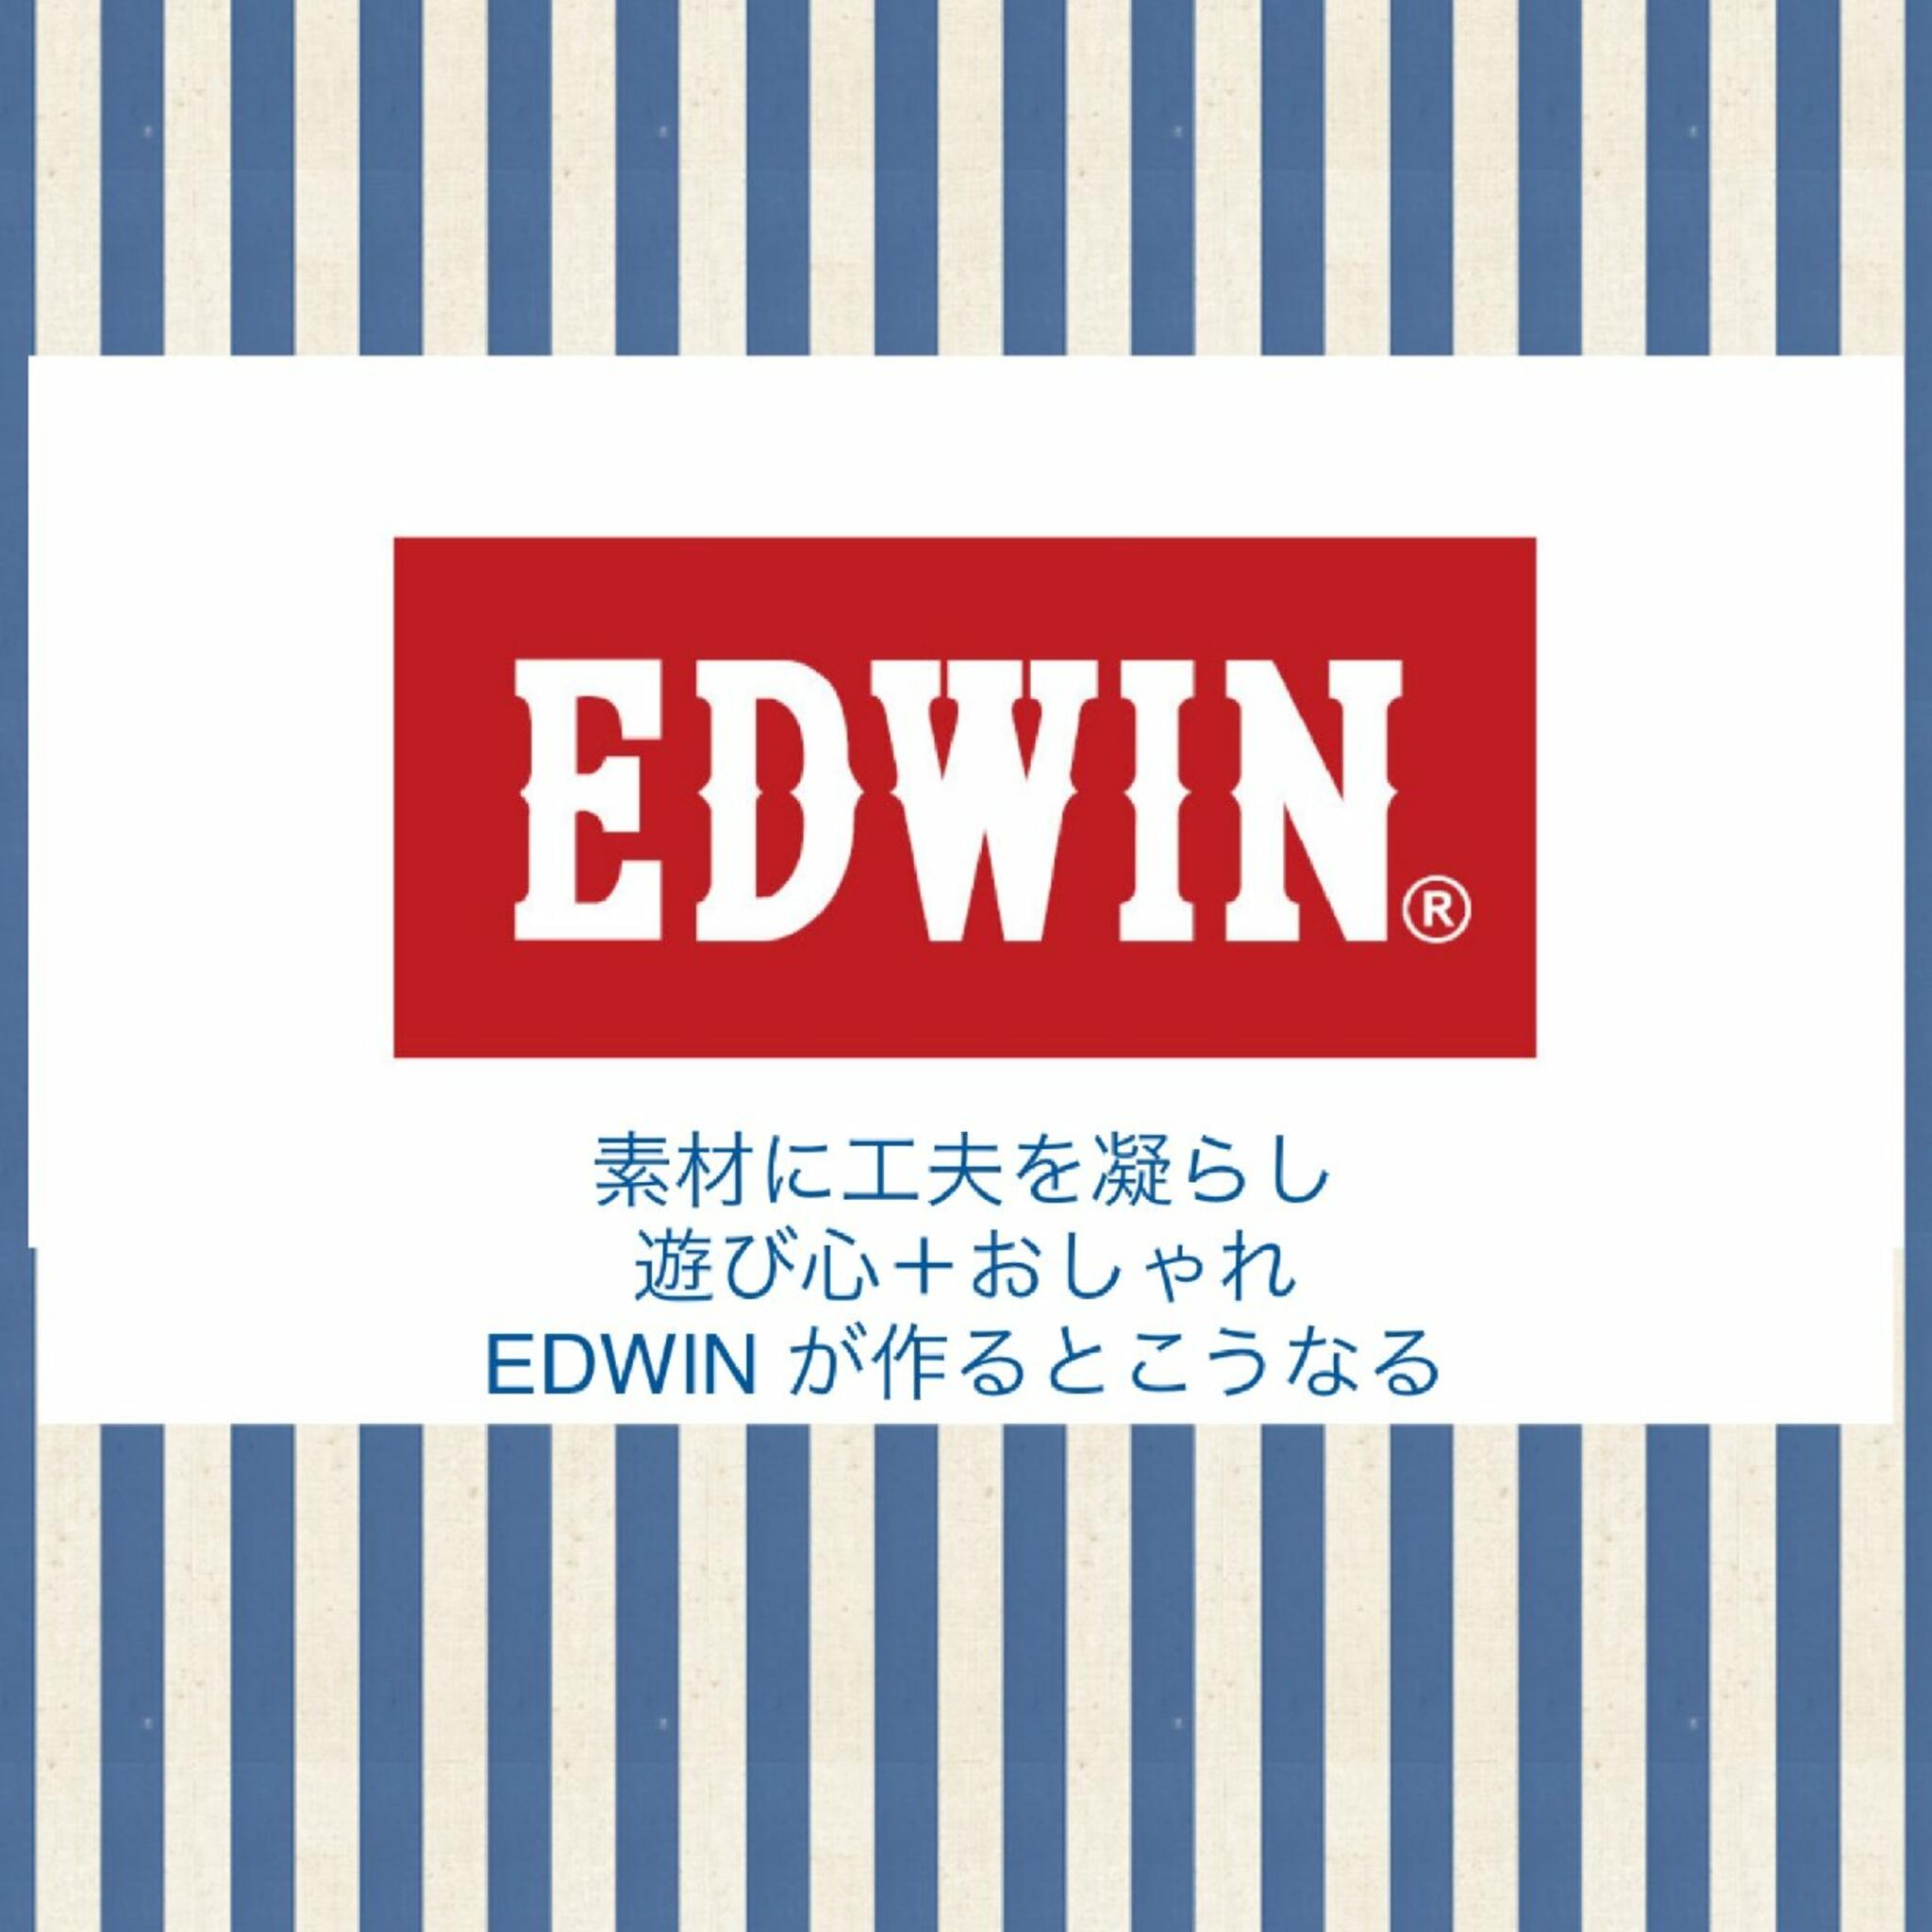 シューズアマン　shoesamanからのお知らせ(いくつになってもオシャレ#EDWIN FAIR ¥1000 OFF)に関する写真